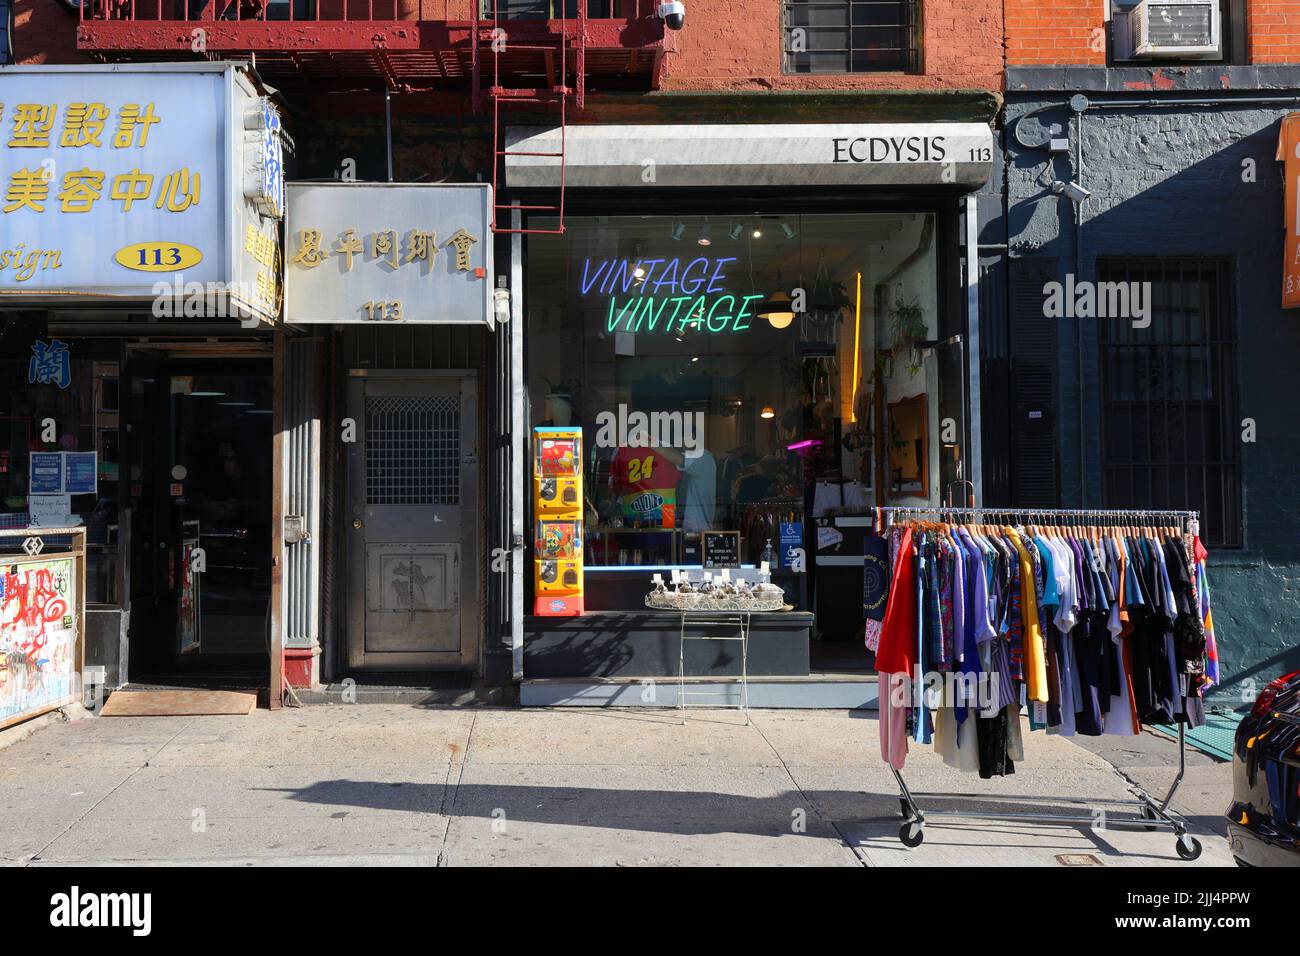 ECDYSIS, 113 Division St, New York, NY. Außenfassade eines Vintage-Bekleidungsladens in Manhattans „Dimes Square“ Chinatown/Lower East Side Stockfoto